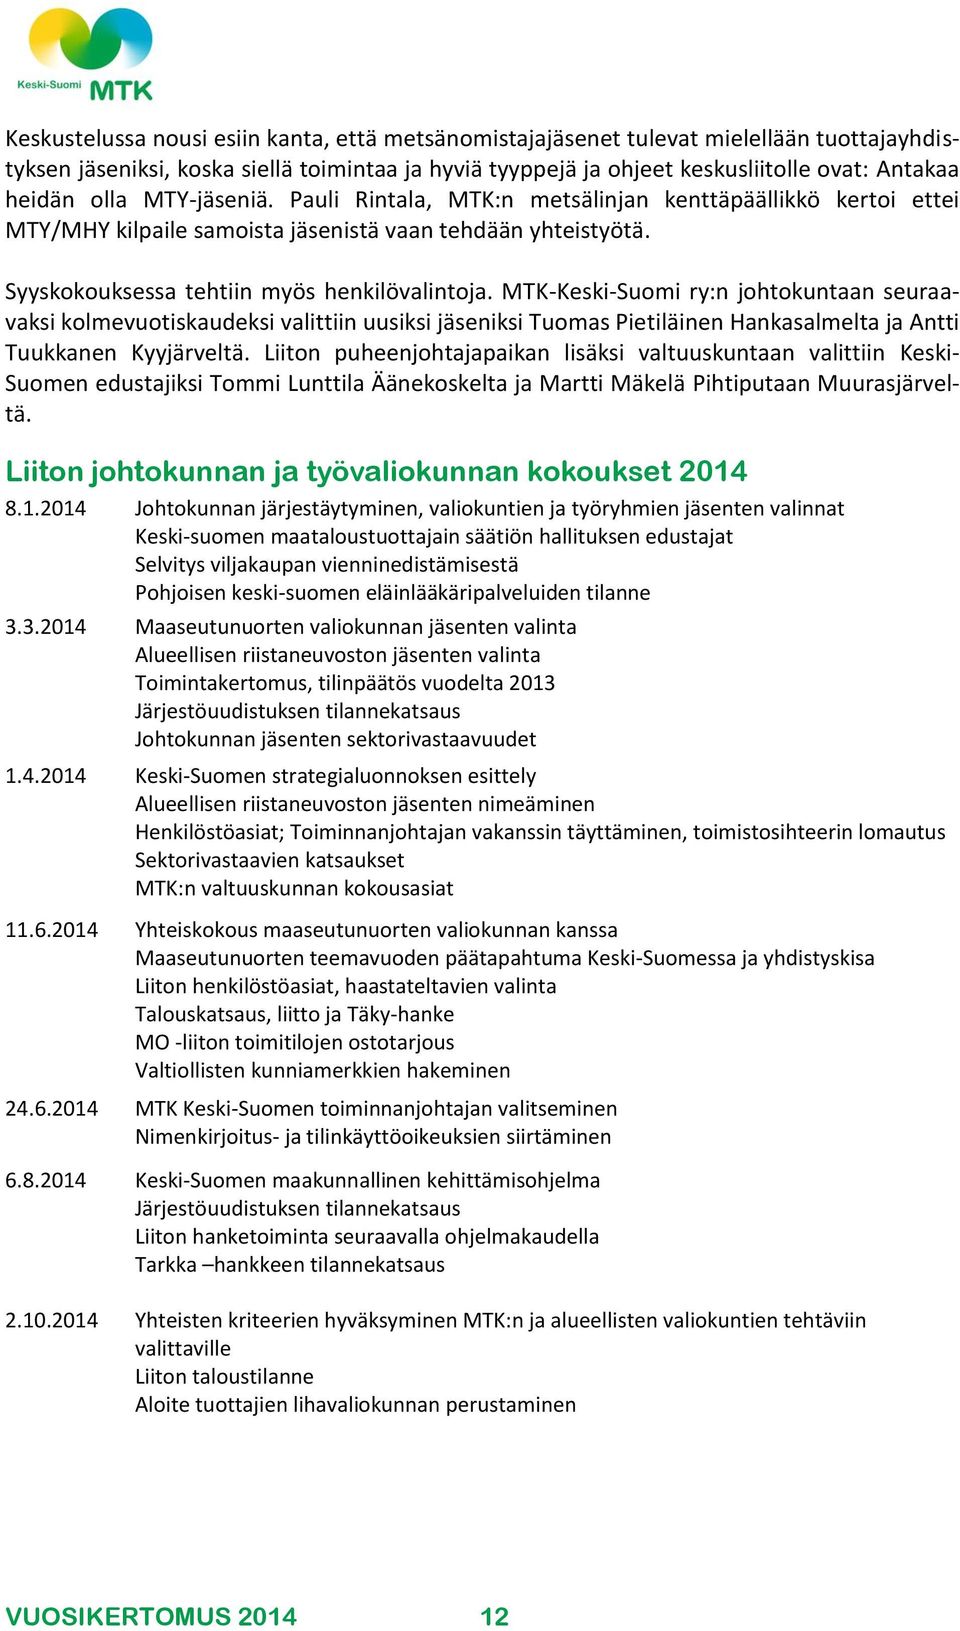 MTK-Keski-Suomi ry:n johtokuntaan seuraavaksi kolmevuotiskaudeksi valittiin uusiksi jäseniksi Tuomas Pietiläinen Hankasalmelta ja Antti Tuukkanen Kyyjärveltä.